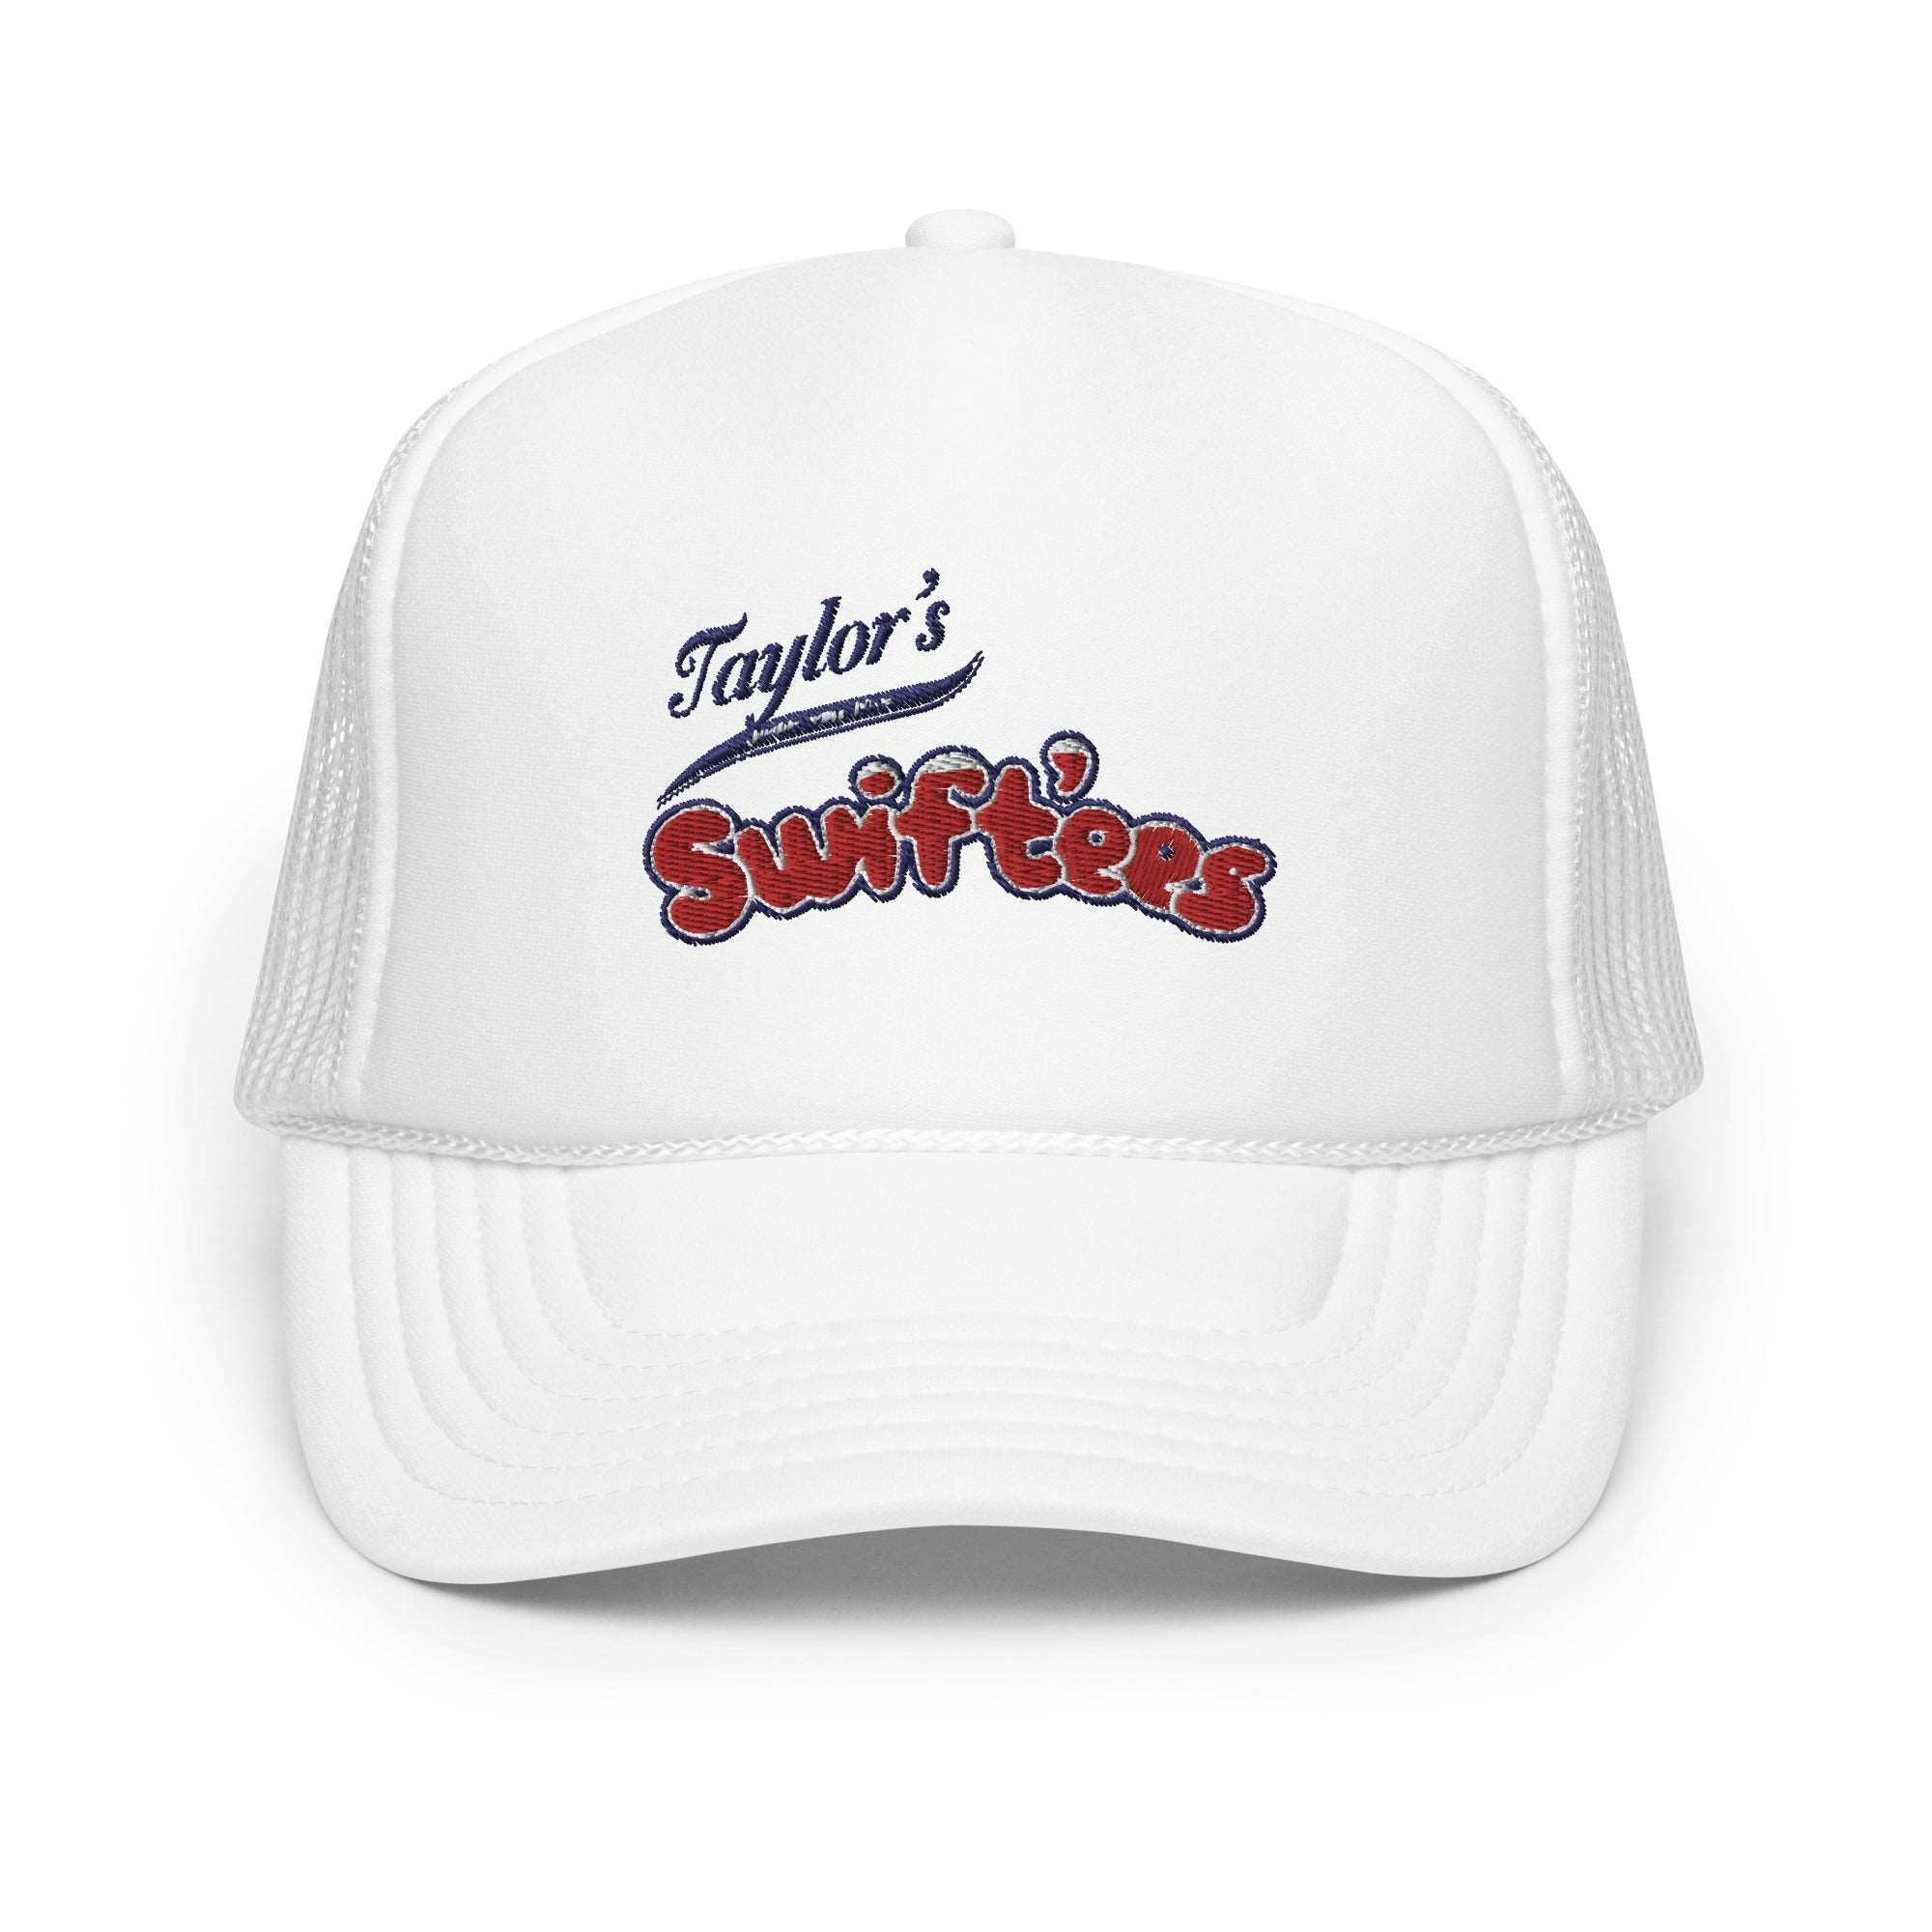 Swift'ees Foam trucker hat